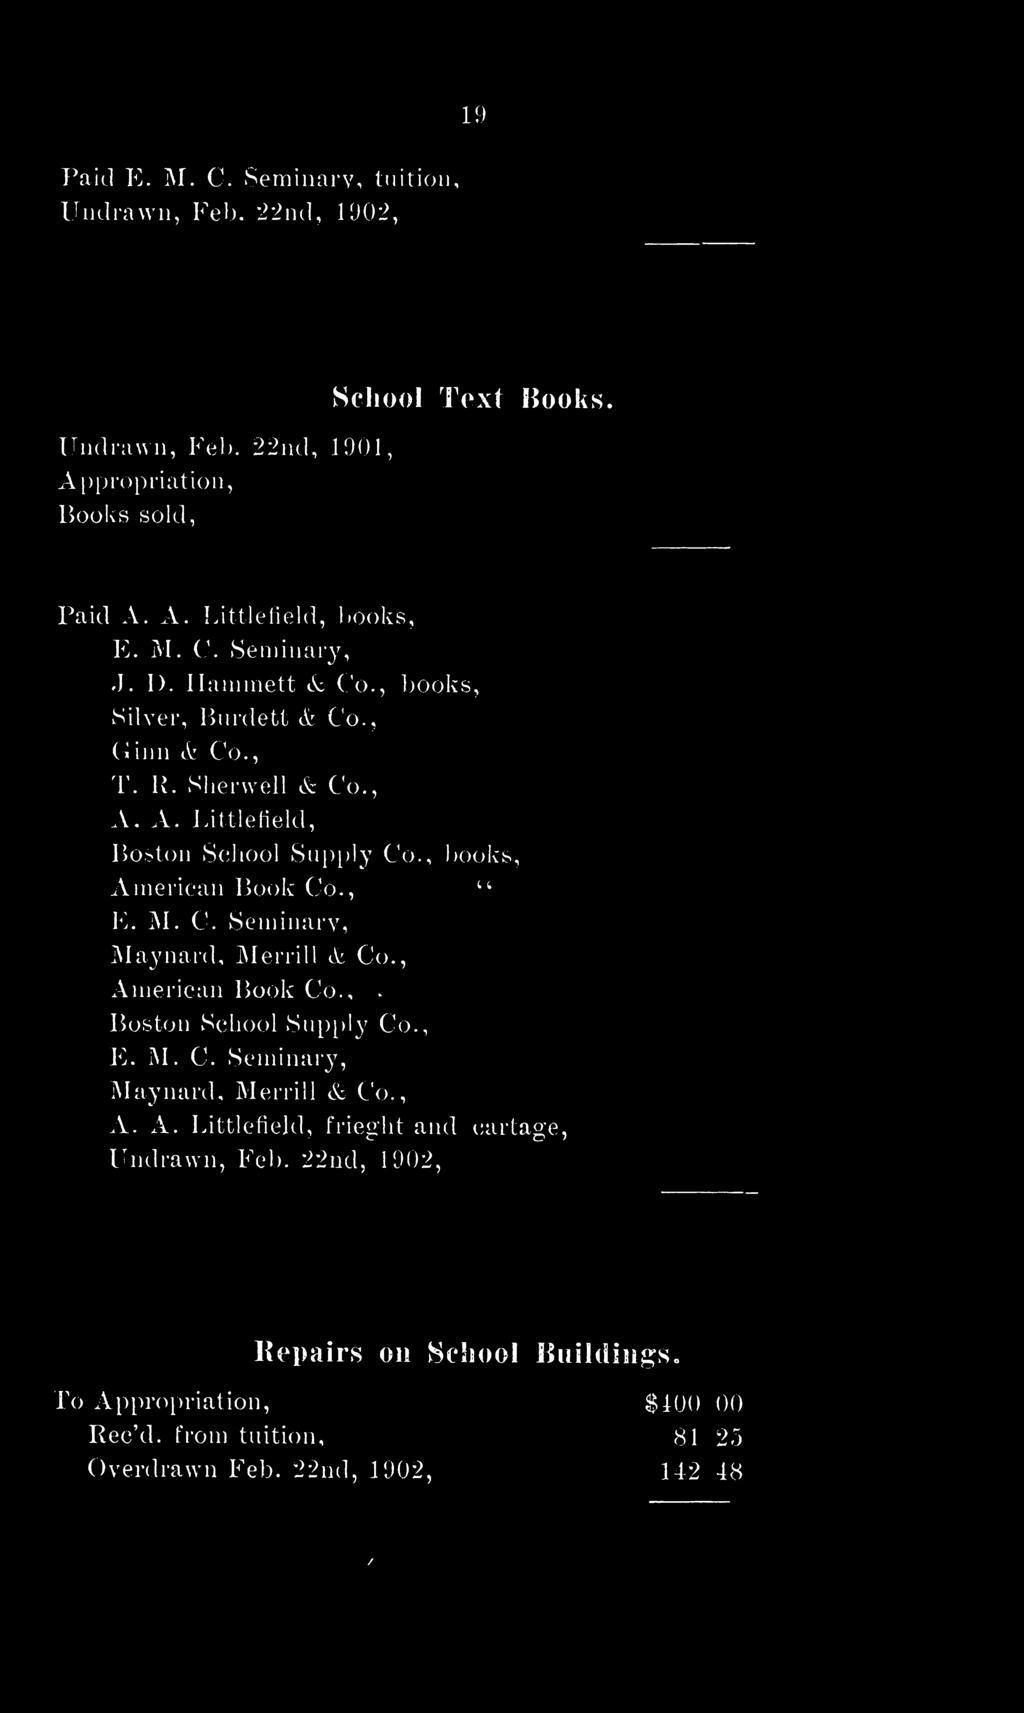 , books, American Book Co., 4 4 E. M. C. Seminary, Maynard, Merrill & Co., %/ / American Book Co.,. Boston School Supply Co., E. M. C. Seminary, Maynard, Merrill & Co., A. A. Littlefield, frieght and cartage, Undrawn, Feb.